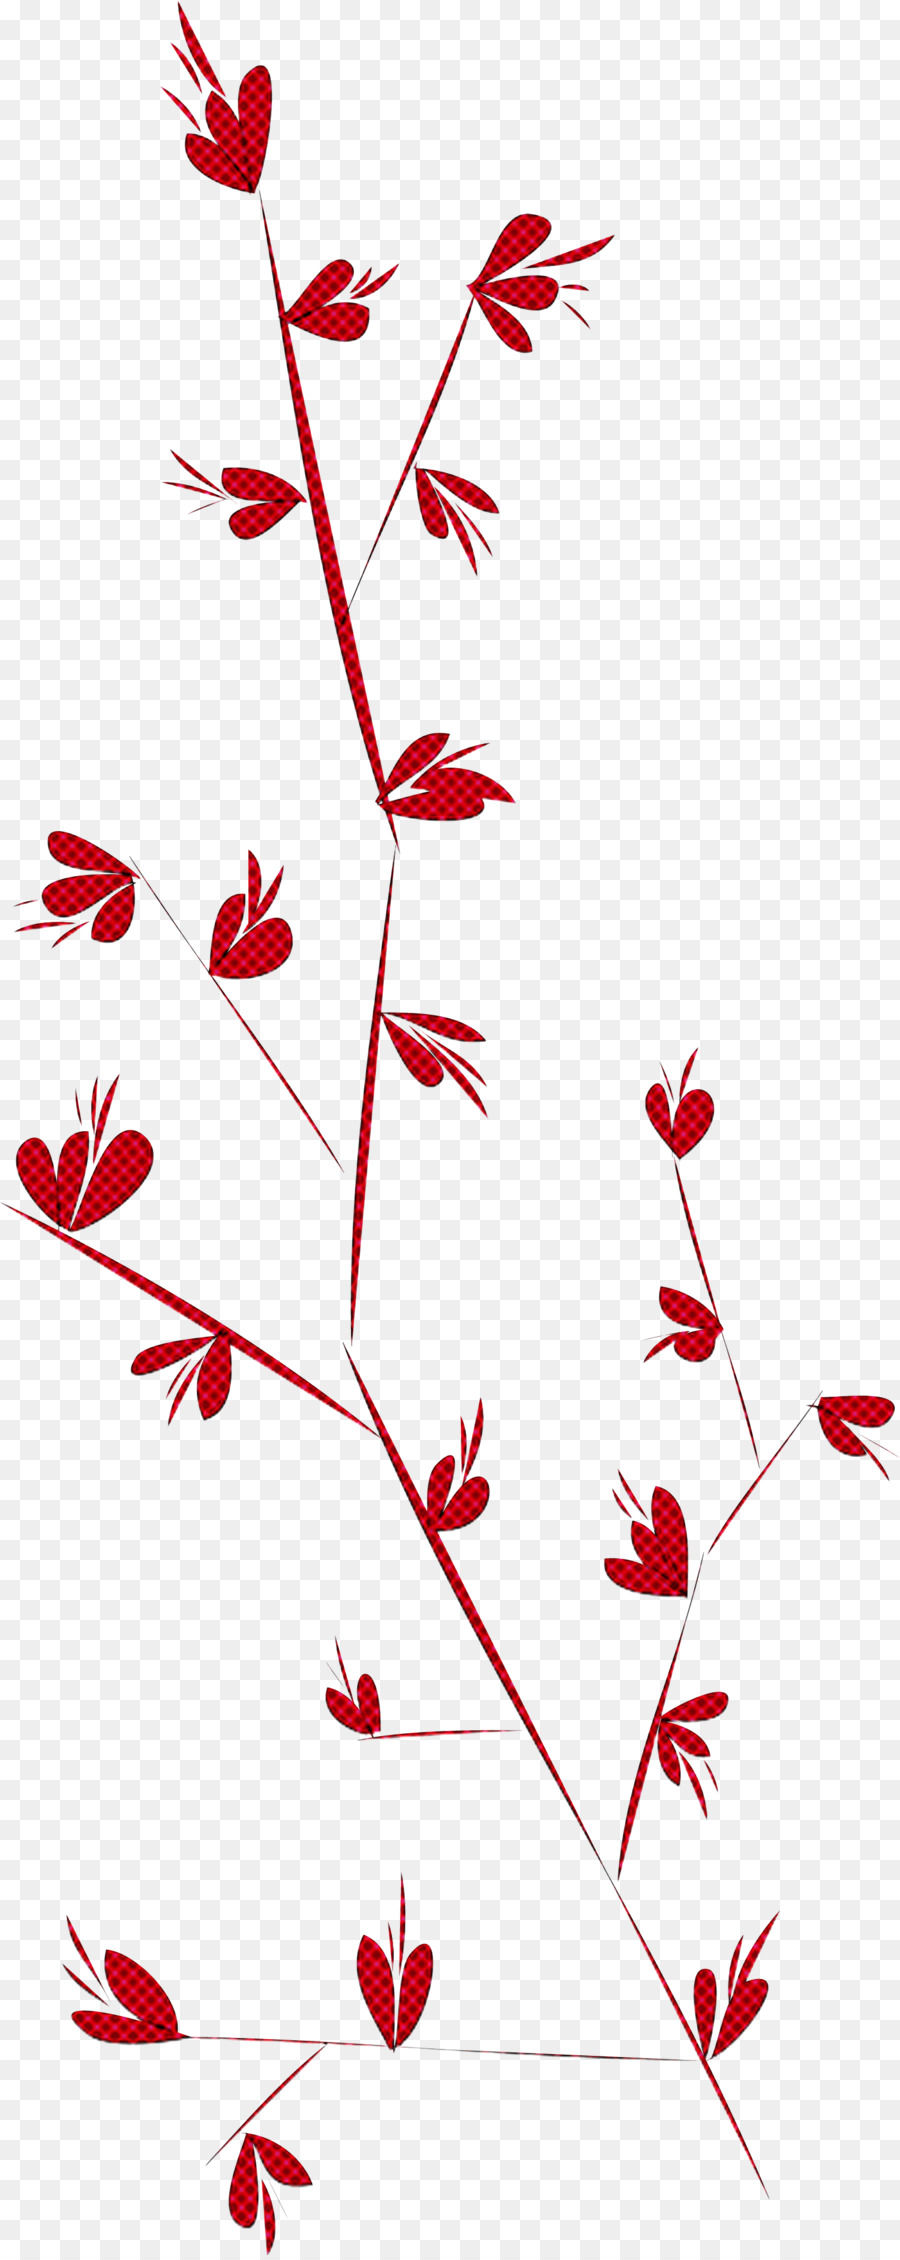 simple leaf simple leaf drawing simple leaf outline